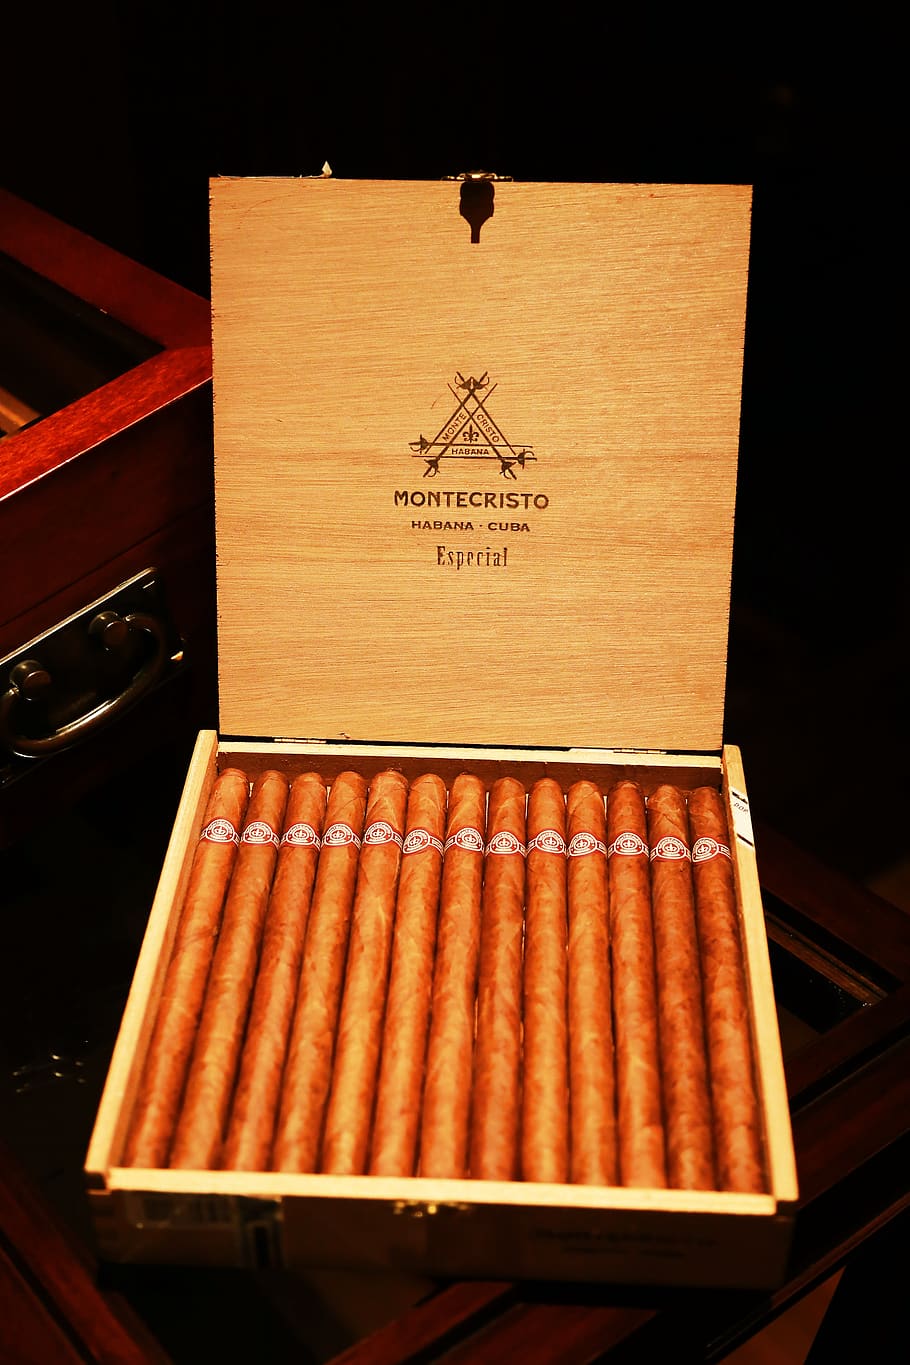 smoking, cigars, tobacco, montecristo, ba na, cuba, text, indoors, box, container